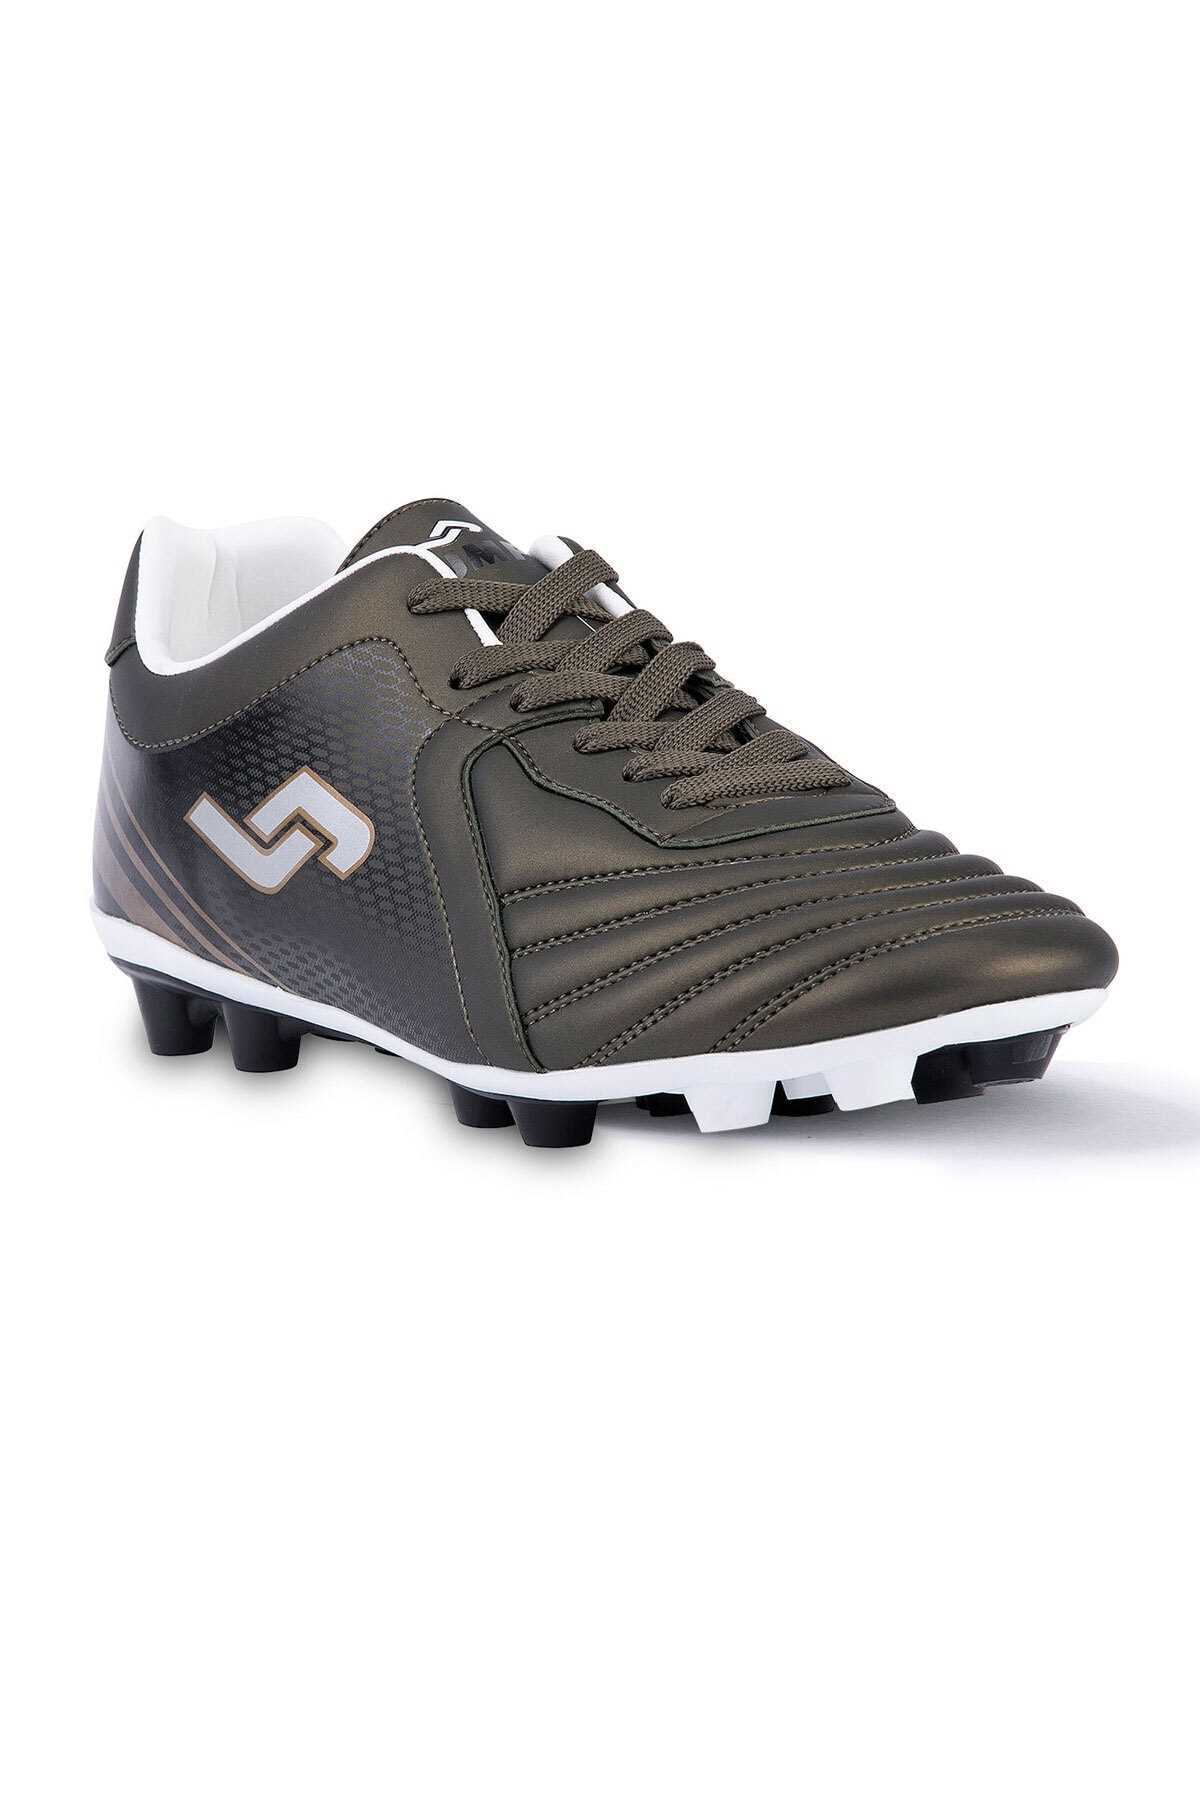 خرید مستقیم کفش فوتبال مردانه شیک Jump رنگ خاکی کد ty34153278